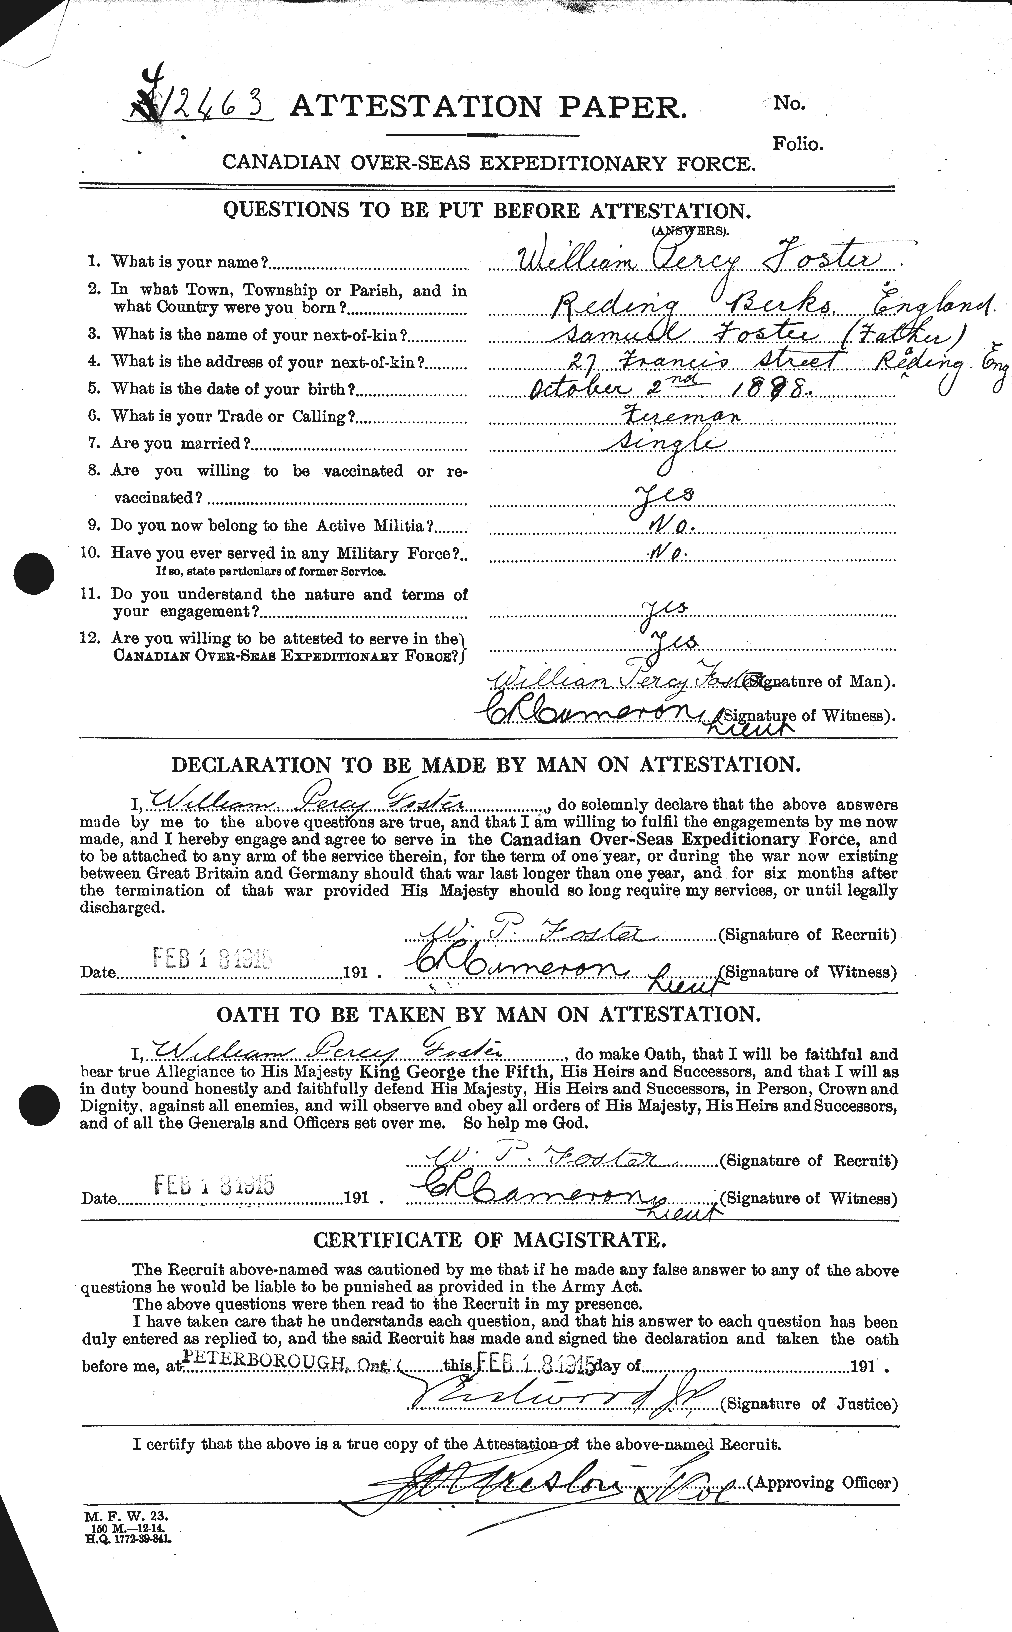 Dossiers du Personnel de la Première Guerre mondiale - CEC 328768a